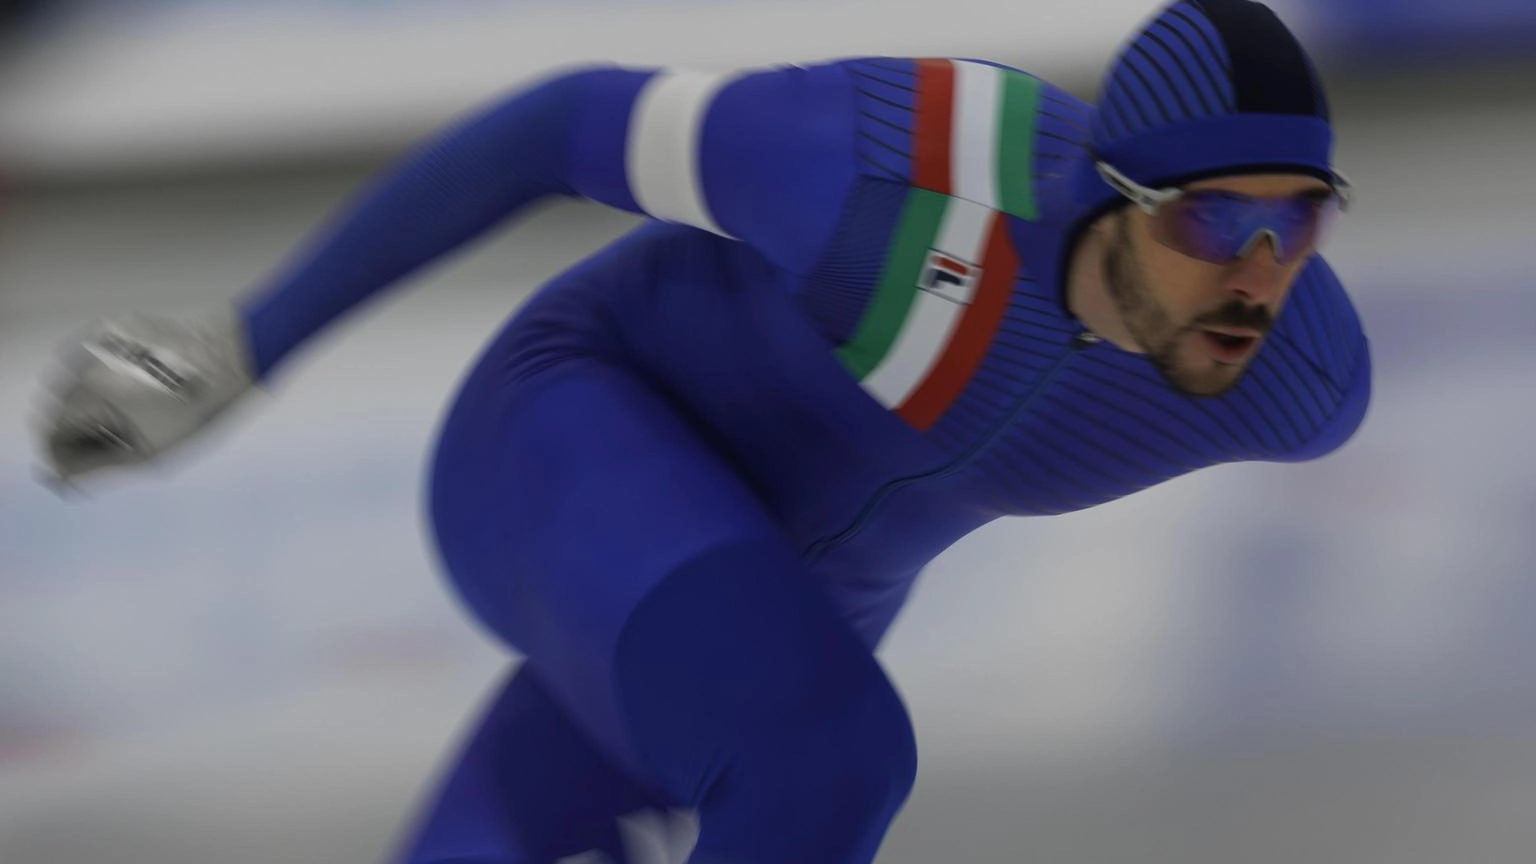 Ghiaccio: Mondiali pattinaggio velocità; 5000m, argento Ghiotto